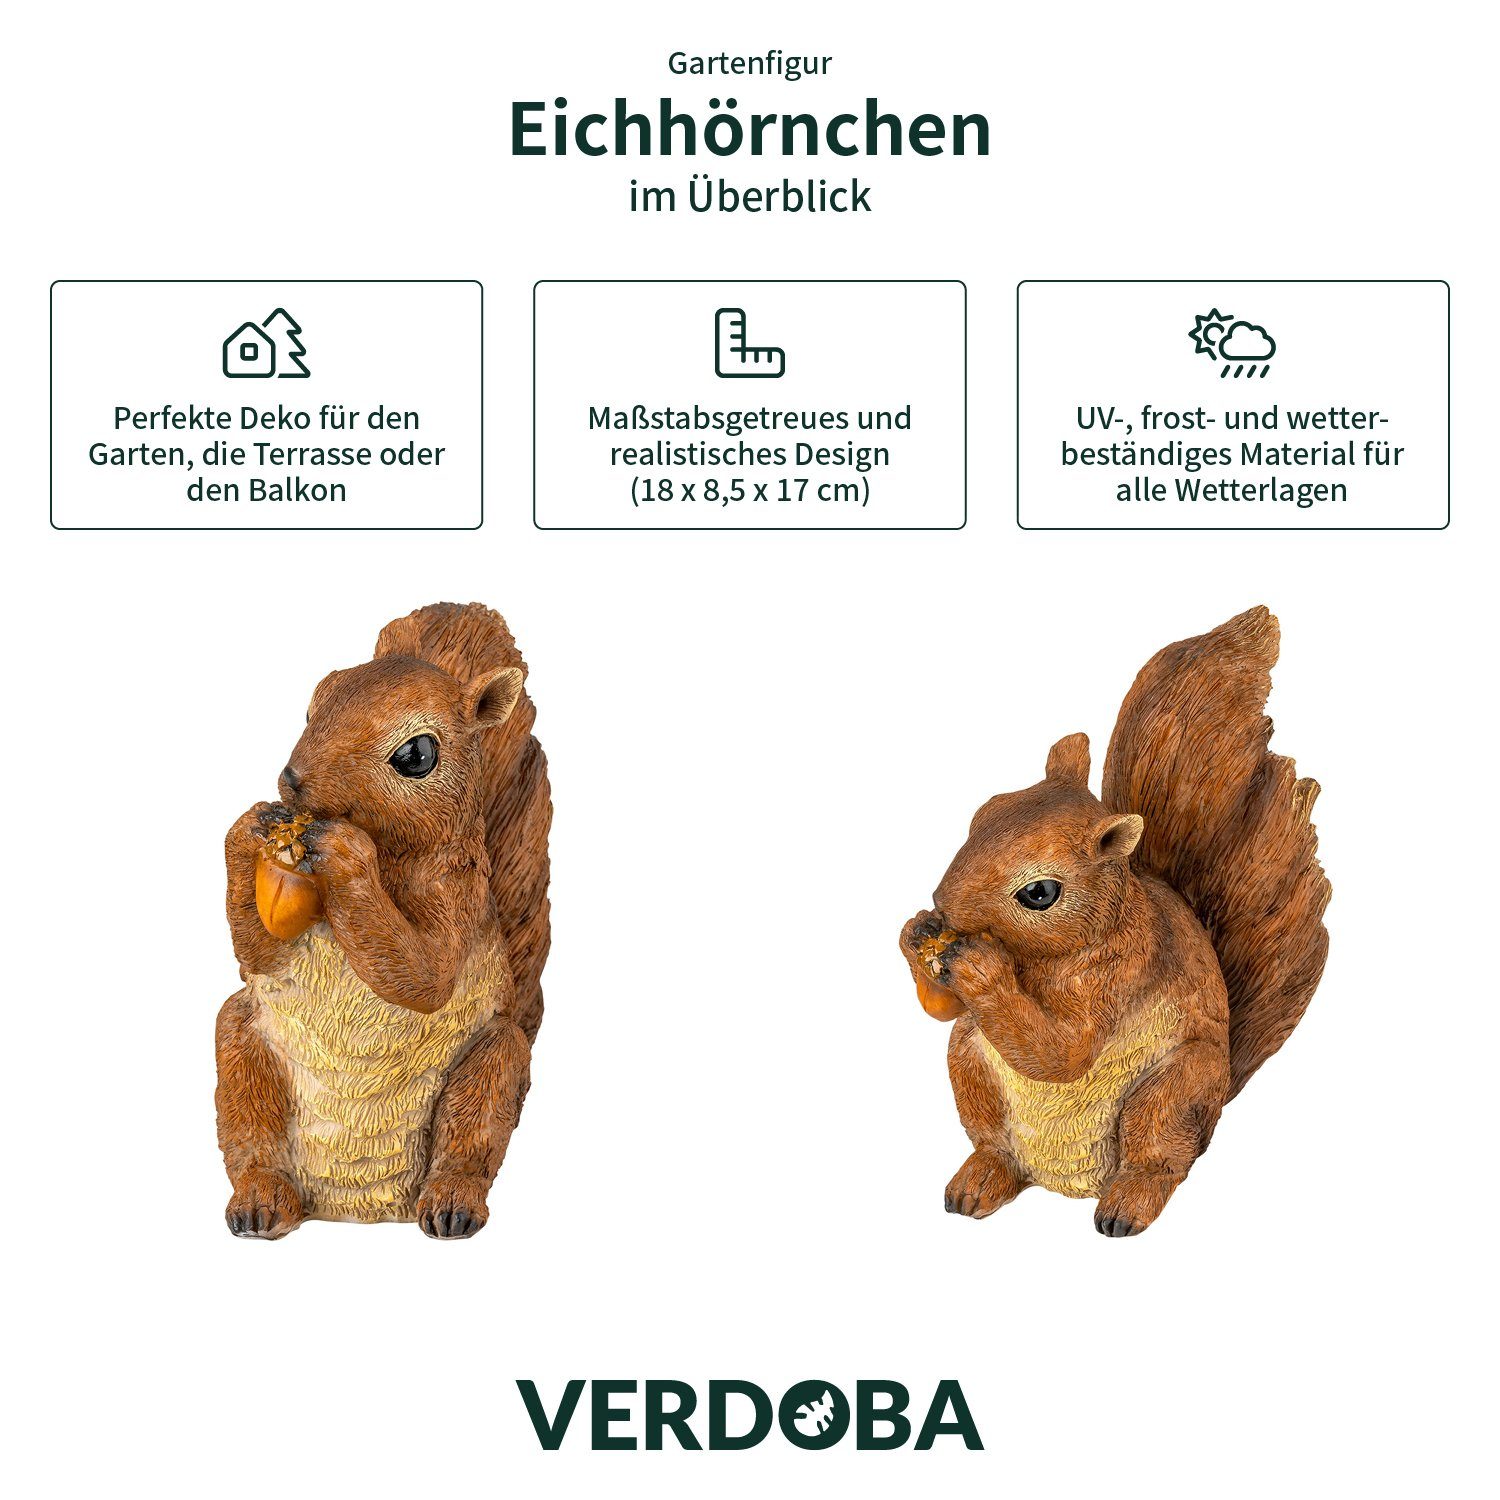 VERDOBA Gartenfigur Eichhörnchen Figur mit Gartenfigur - Deko Nuss wetterfeste Gartendeko